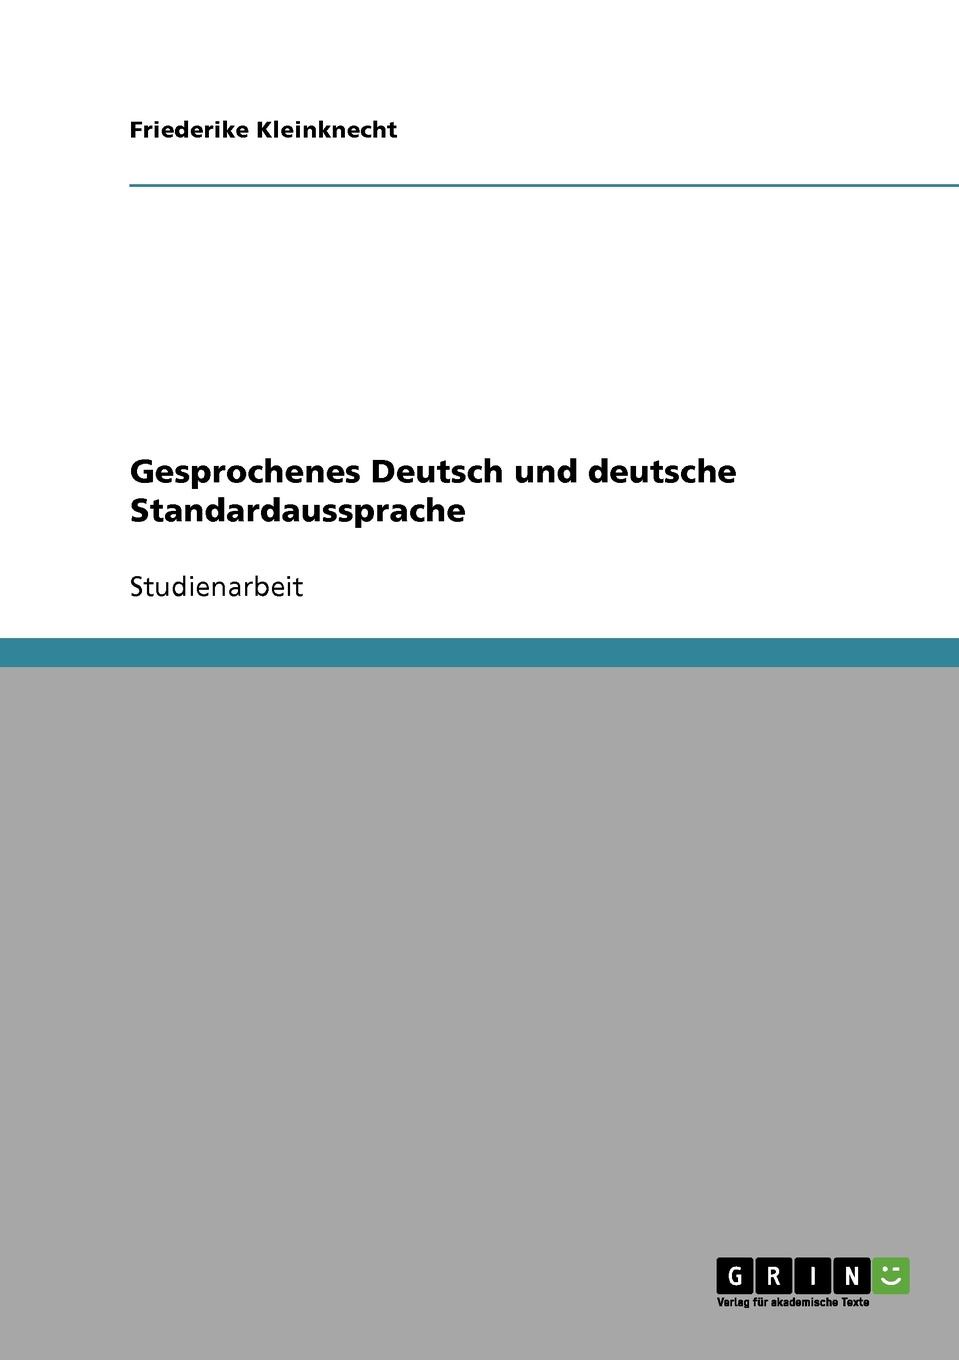 Gesprochenes Deutsch und deutsche Standardaussprache